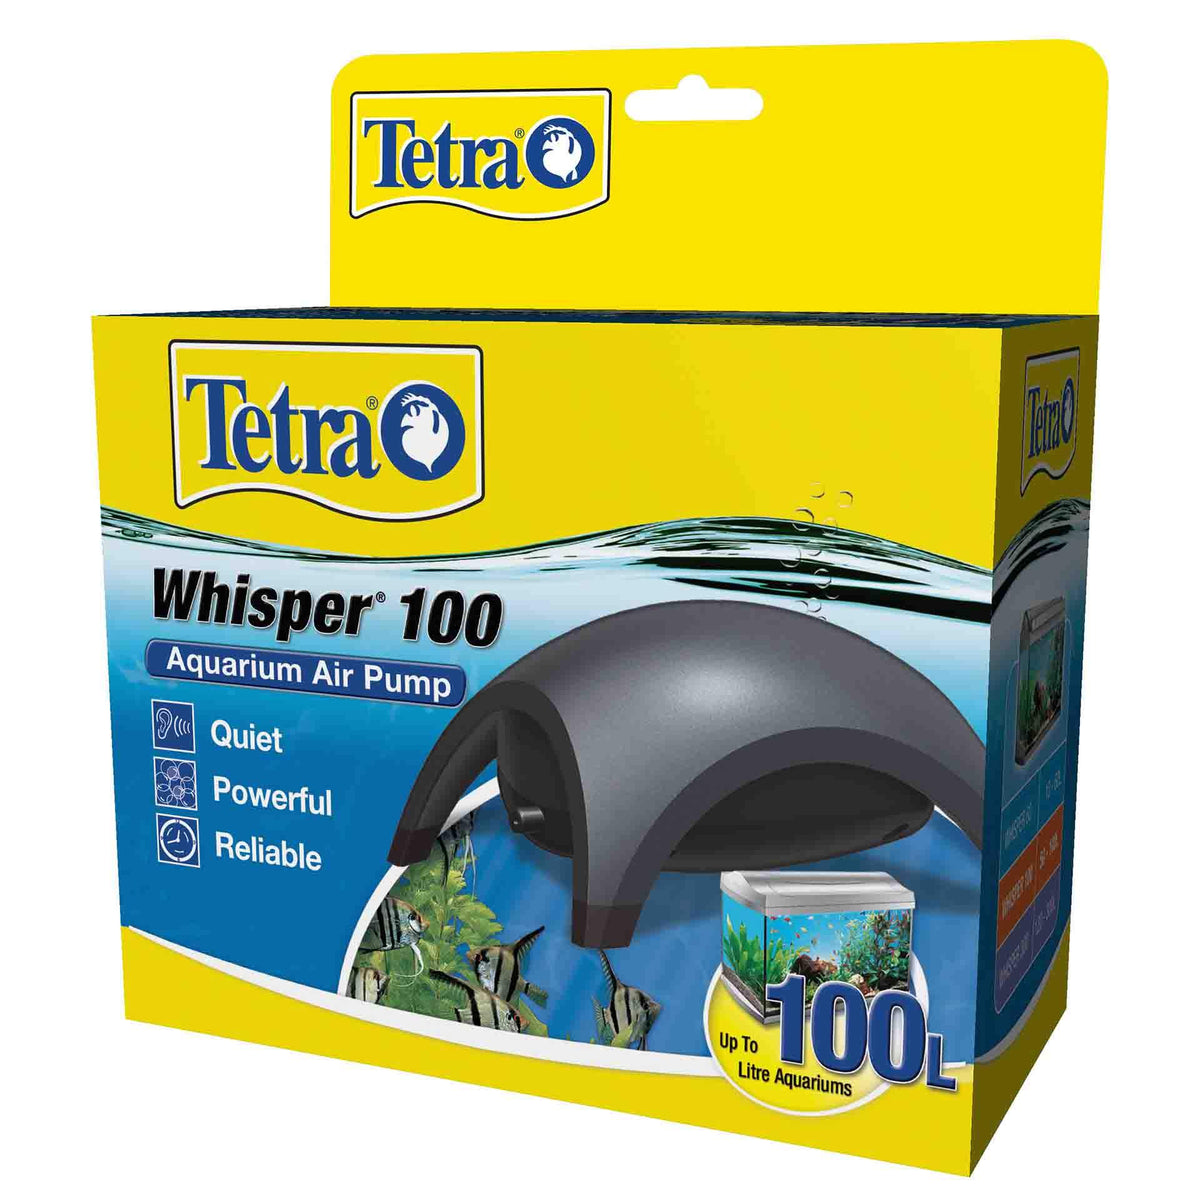 Tetra Whisper 100 Aquarium Air Pump